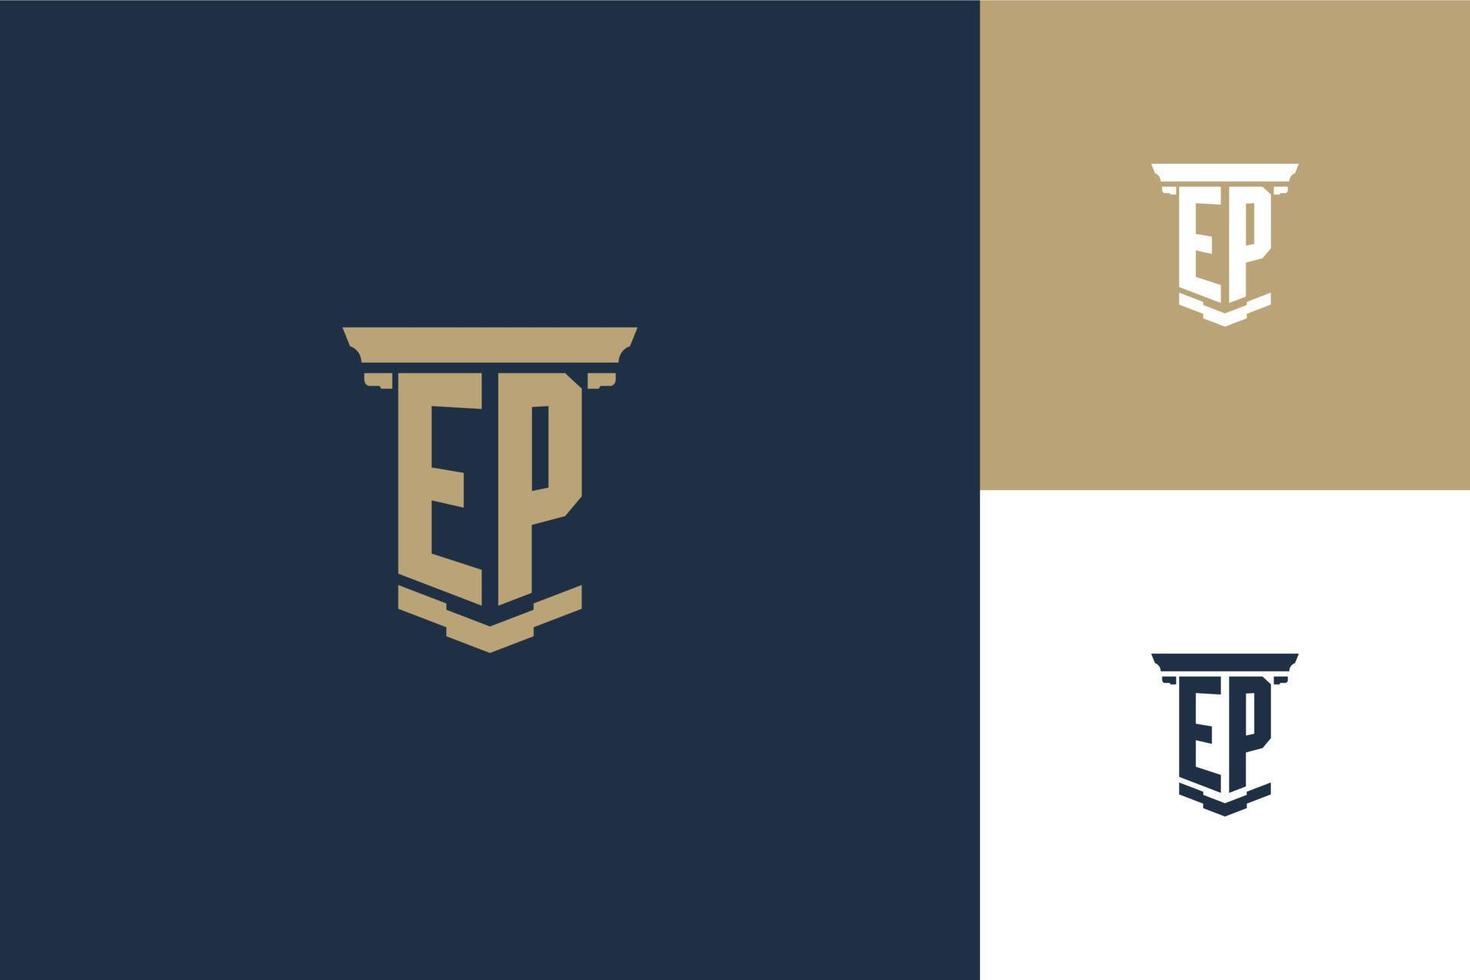 design de logotipo de iniciais de monograma ep com ícone de pilar. design de logotipo de advogado vetor